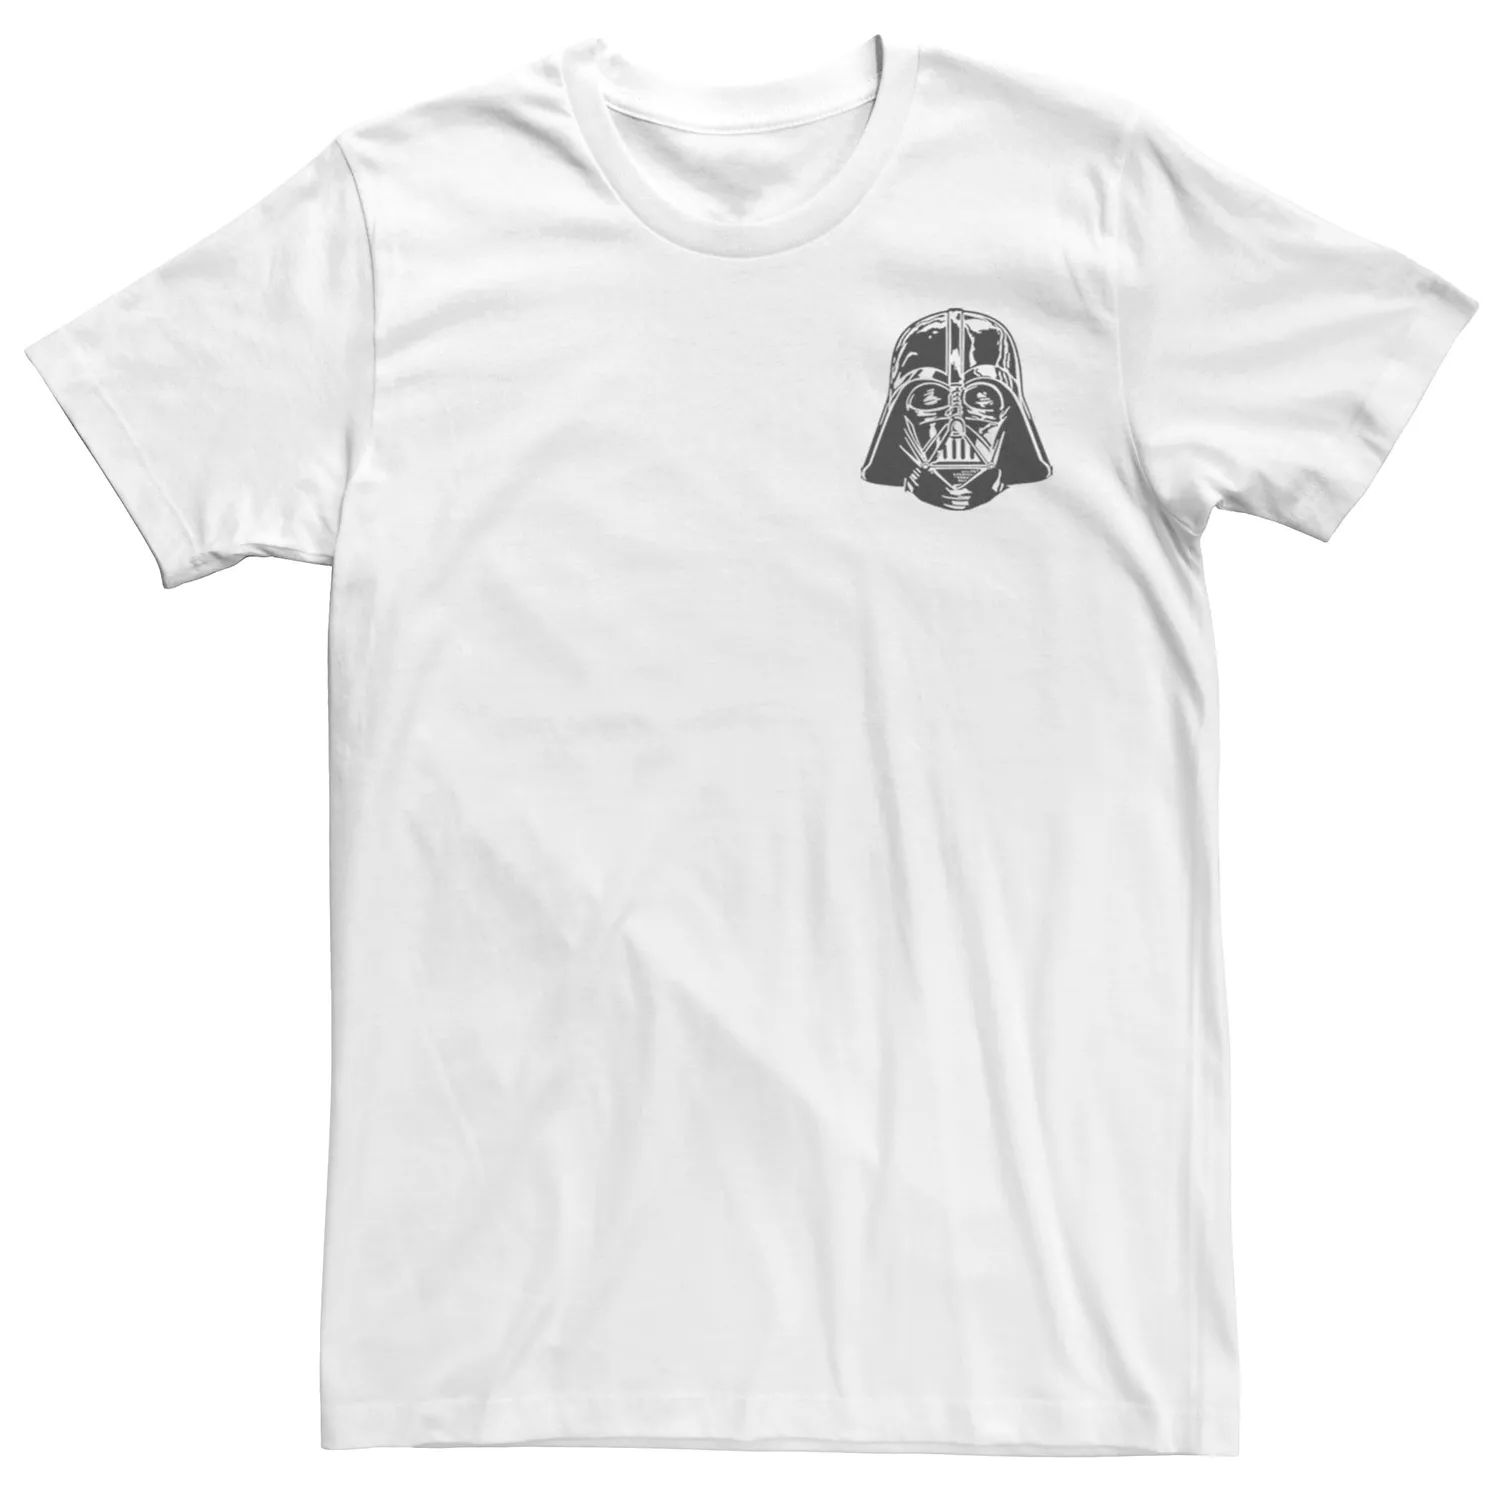 Мужская футболка с карманом и шлемом Дарта Вейдера «Звездные войны» Licensed Character, белый мужская футболка со звездами и шлемом дарта вейдера звездные войны licensed character